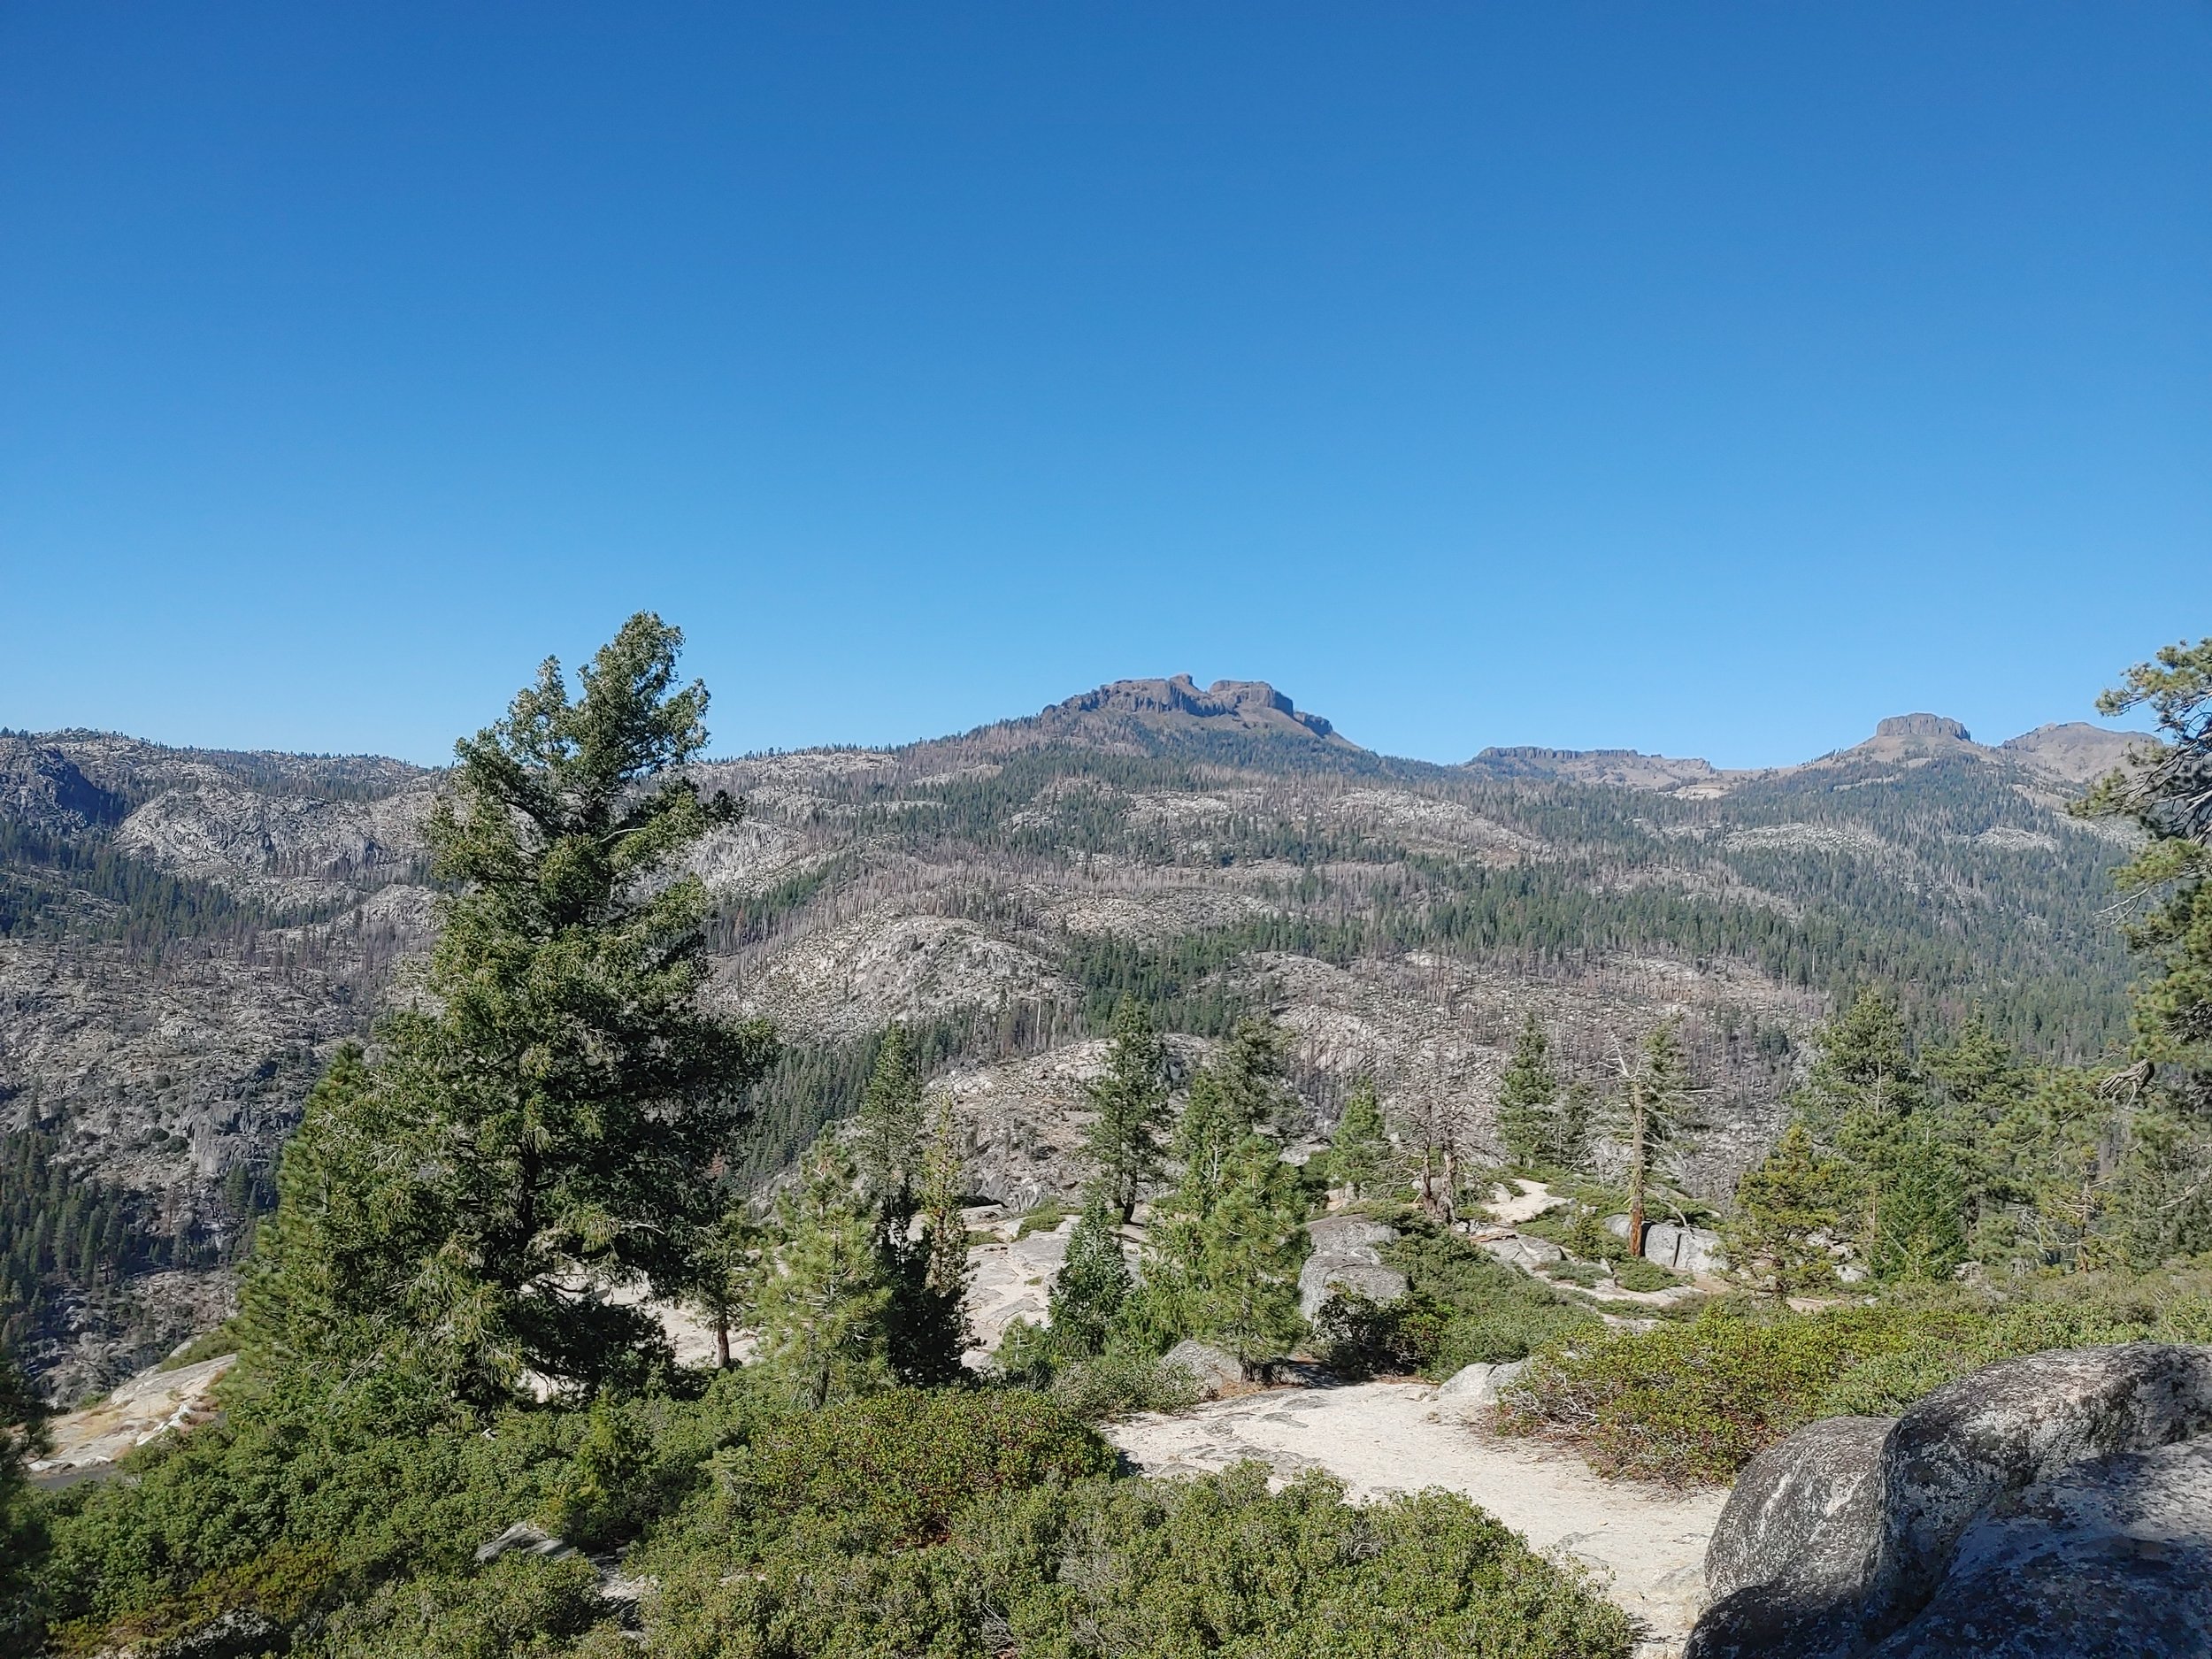  The drive home through the Sierras… 